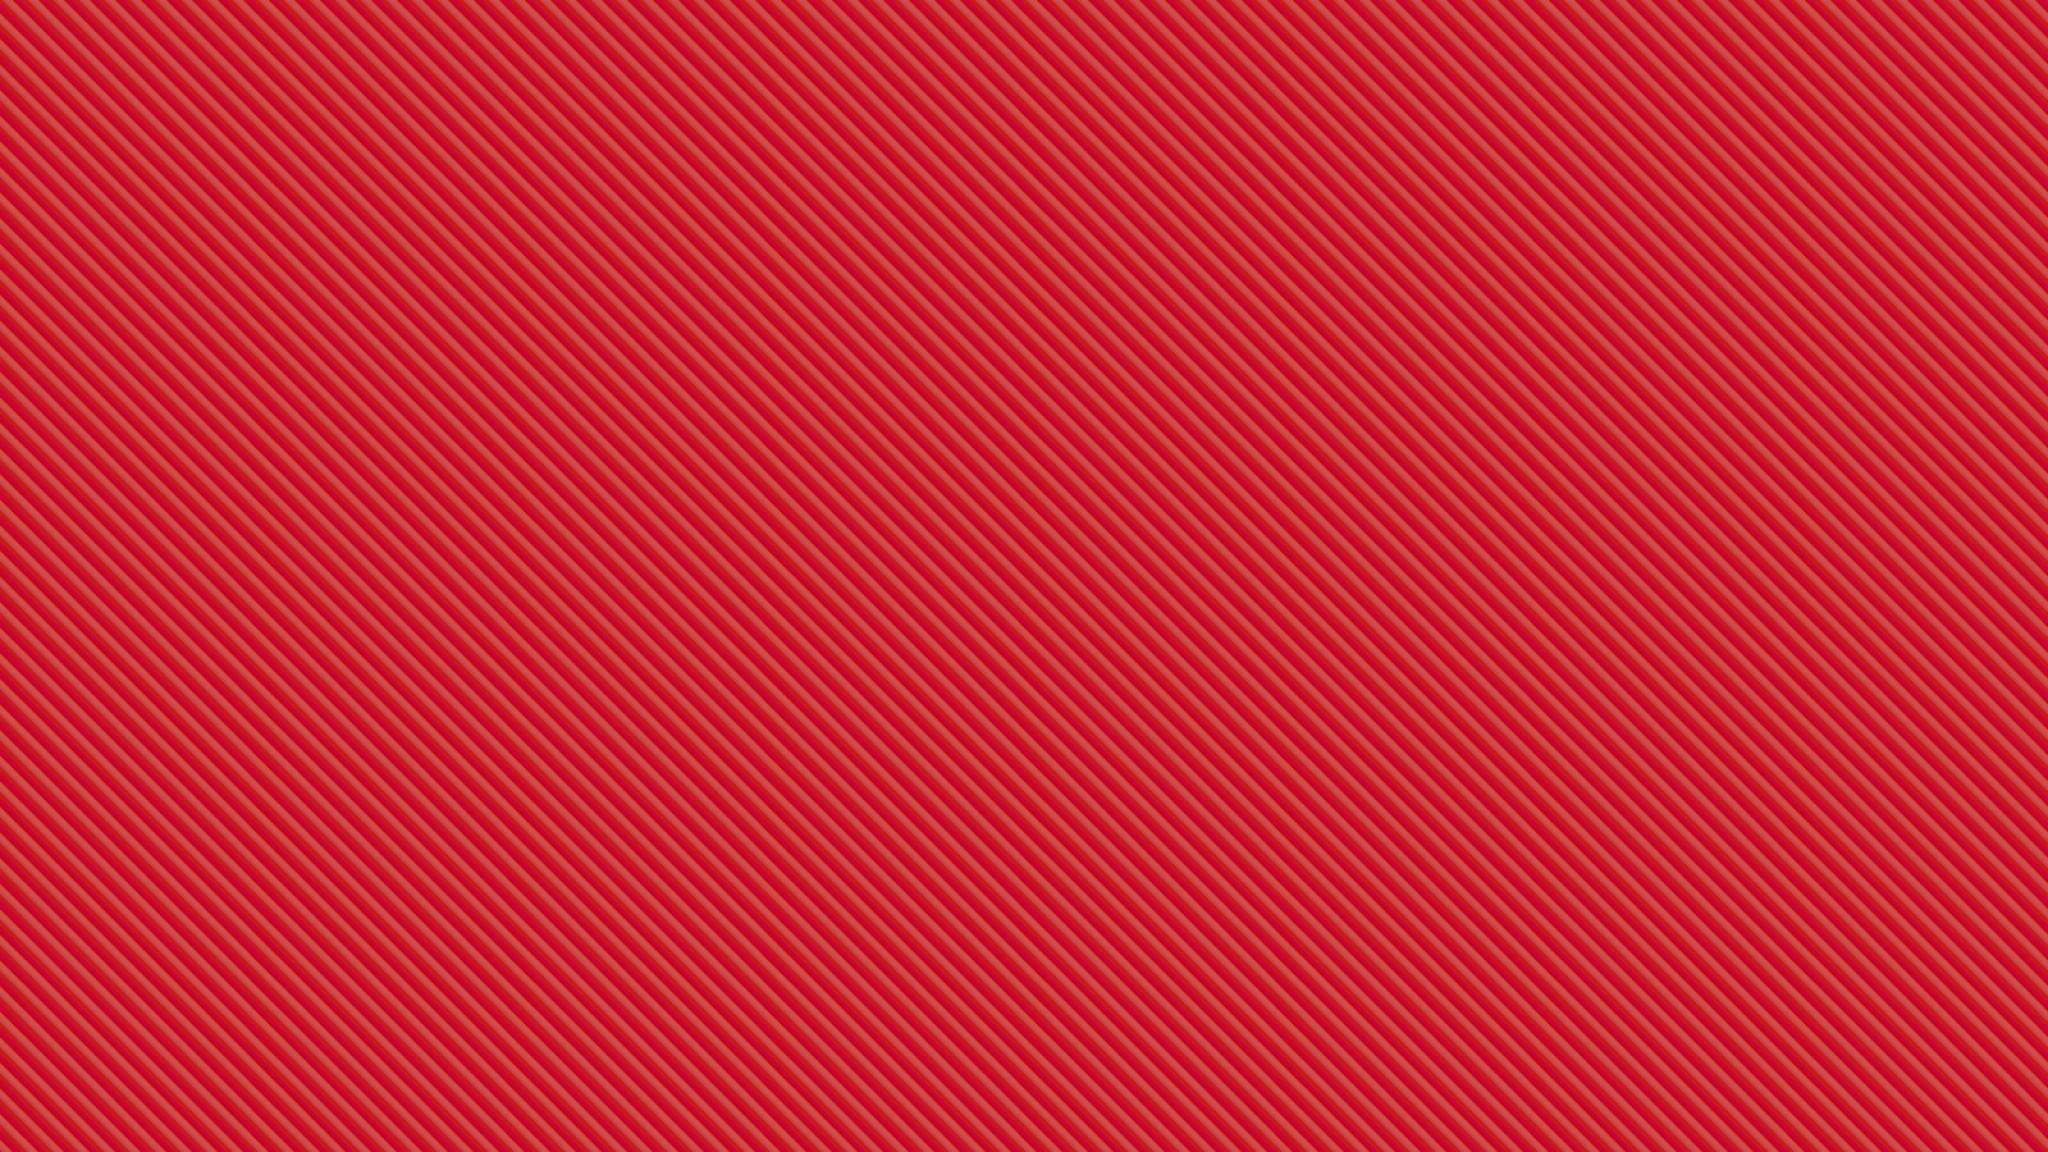 Hình nền máy tính đỏ rực là một trong những kiểu chủ đạo được nhiều người ưa thích trong những năm qua. Và bức hình nền đỏ trong đêm này chắc chắn sẽ đem lại cho bạn sự thông minh và tinh tế khi sử dụng máy tính cho công việc hay giải trí.